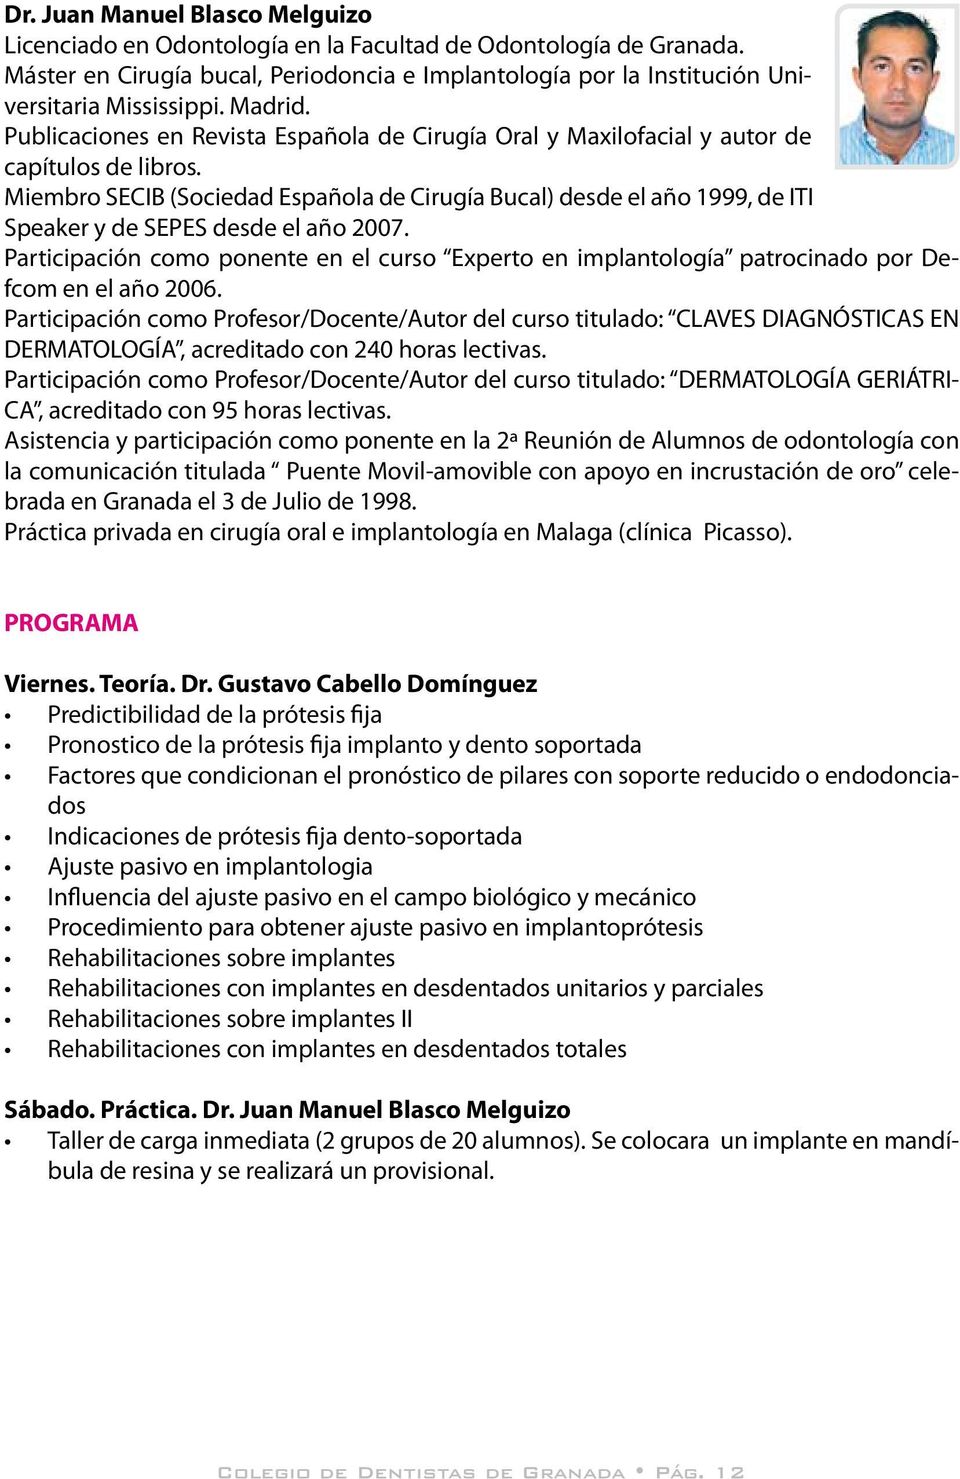 Miembro SECIB (Sociedad Española de Cirugía Bucal) desde el año 1999, de ITI Speaker y de SEPES desde el año 2007.